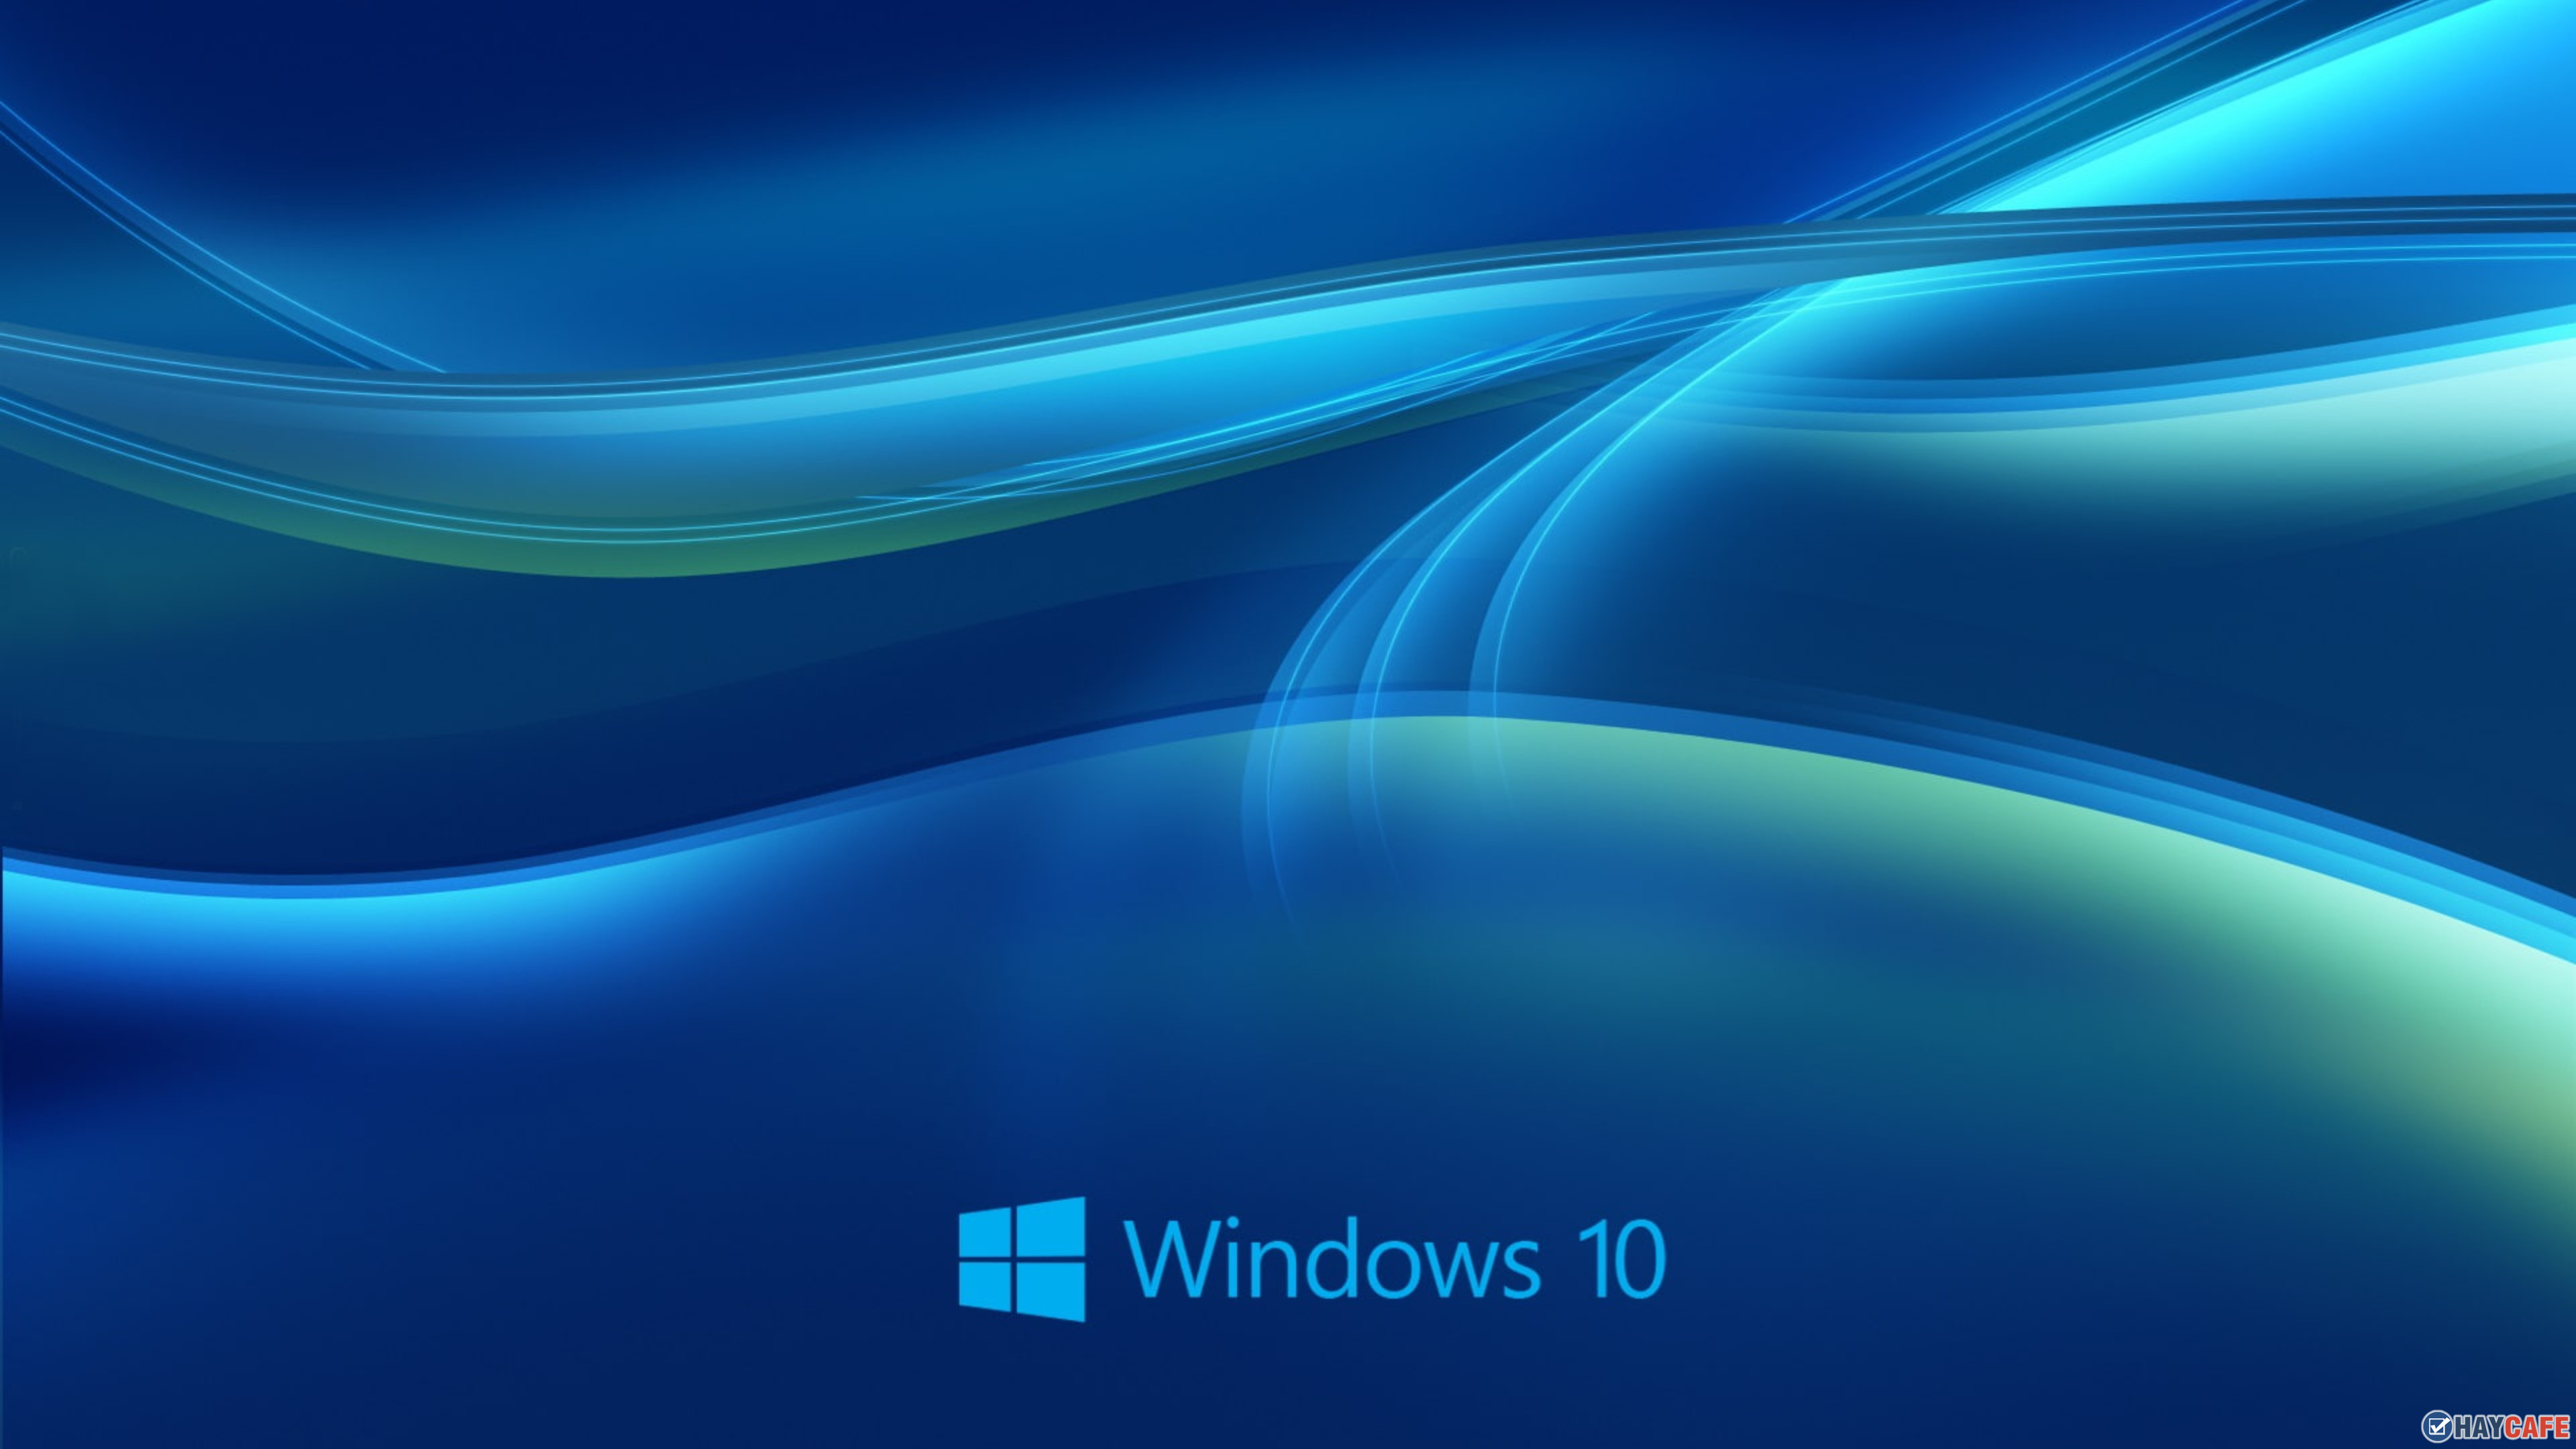 Hình nền Windows 10 đẹp long lanh  TTTH